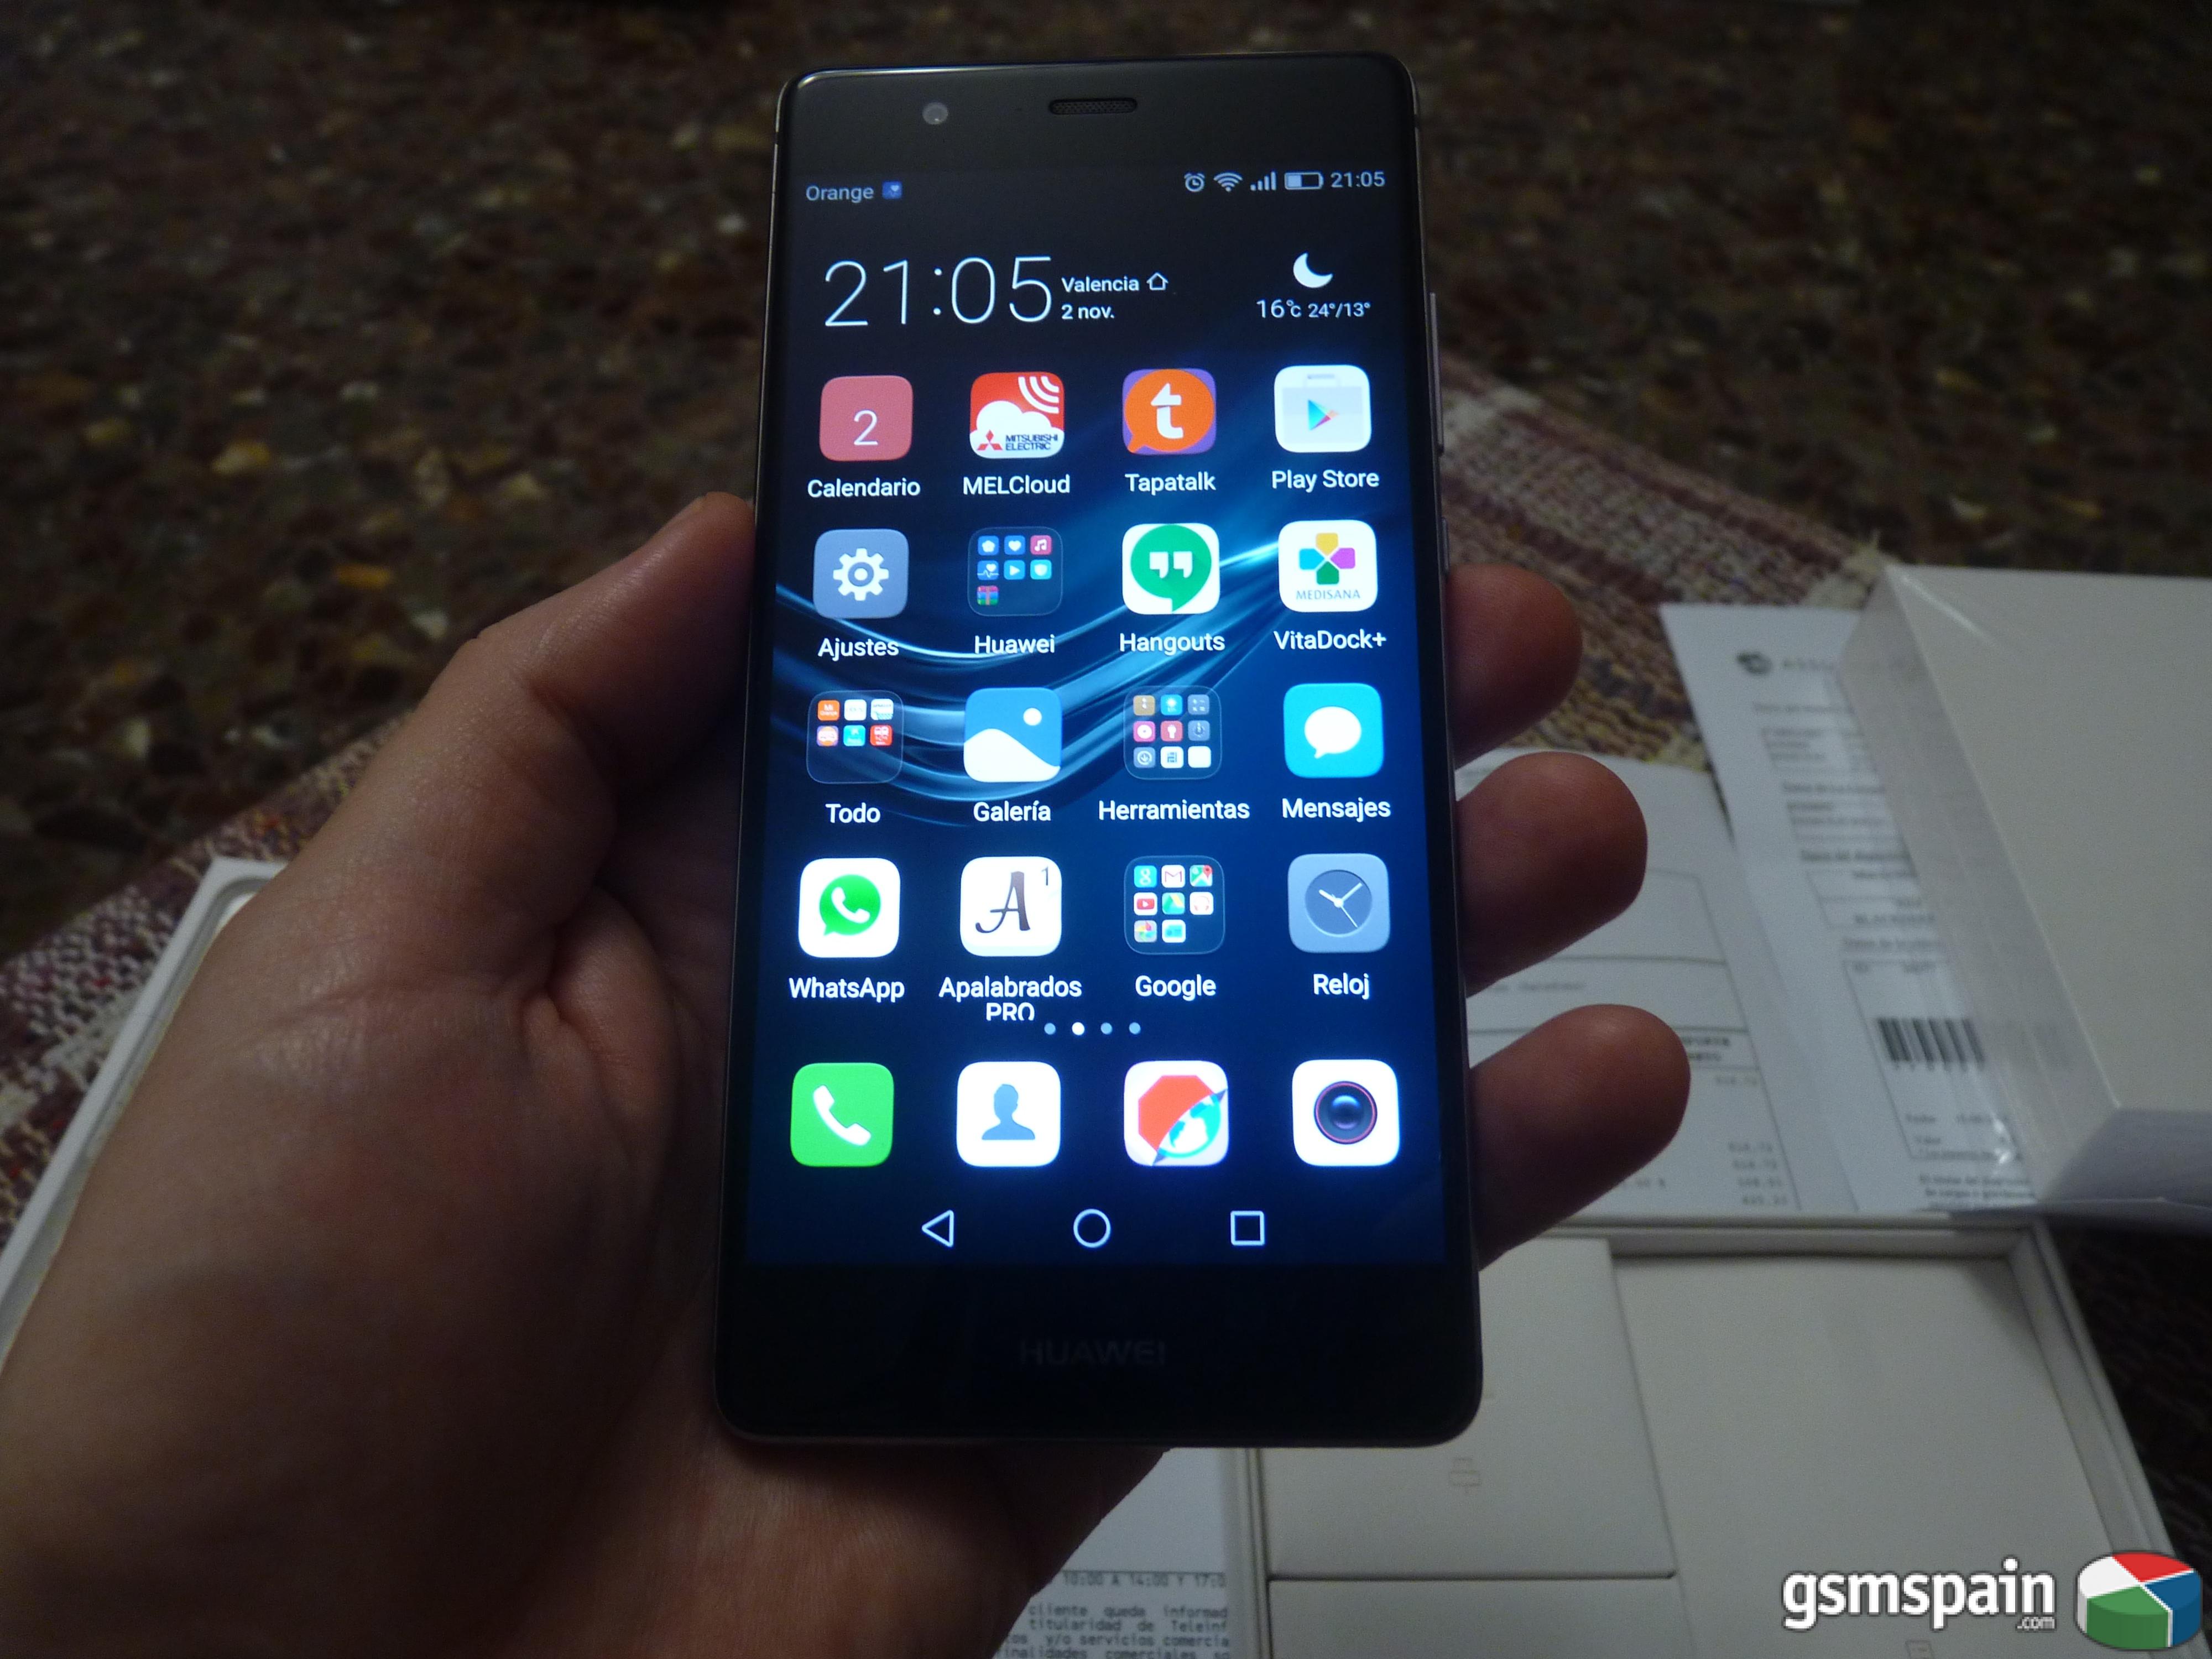 [CAMBIO] Cambio Huawei P9 por Iphone SE, 6, 6S o 7